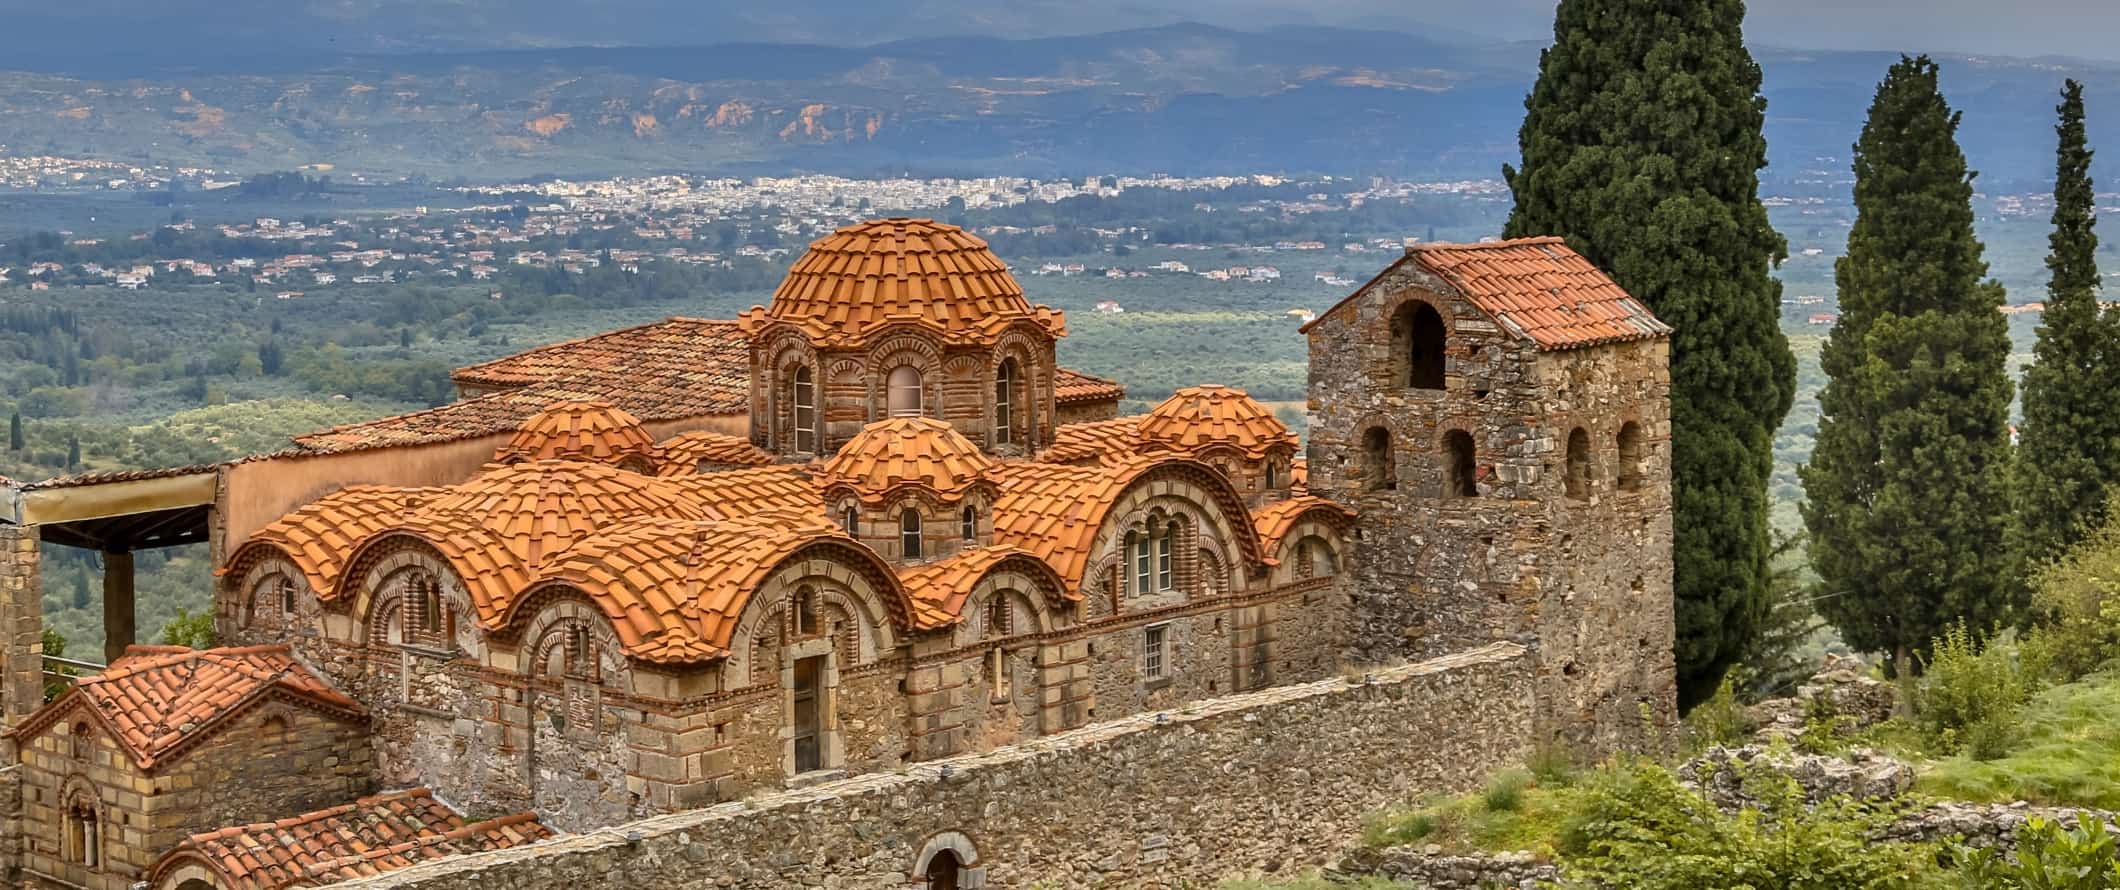 O mosteiro bizantino no maltrato perto de Esparta, Grécia.